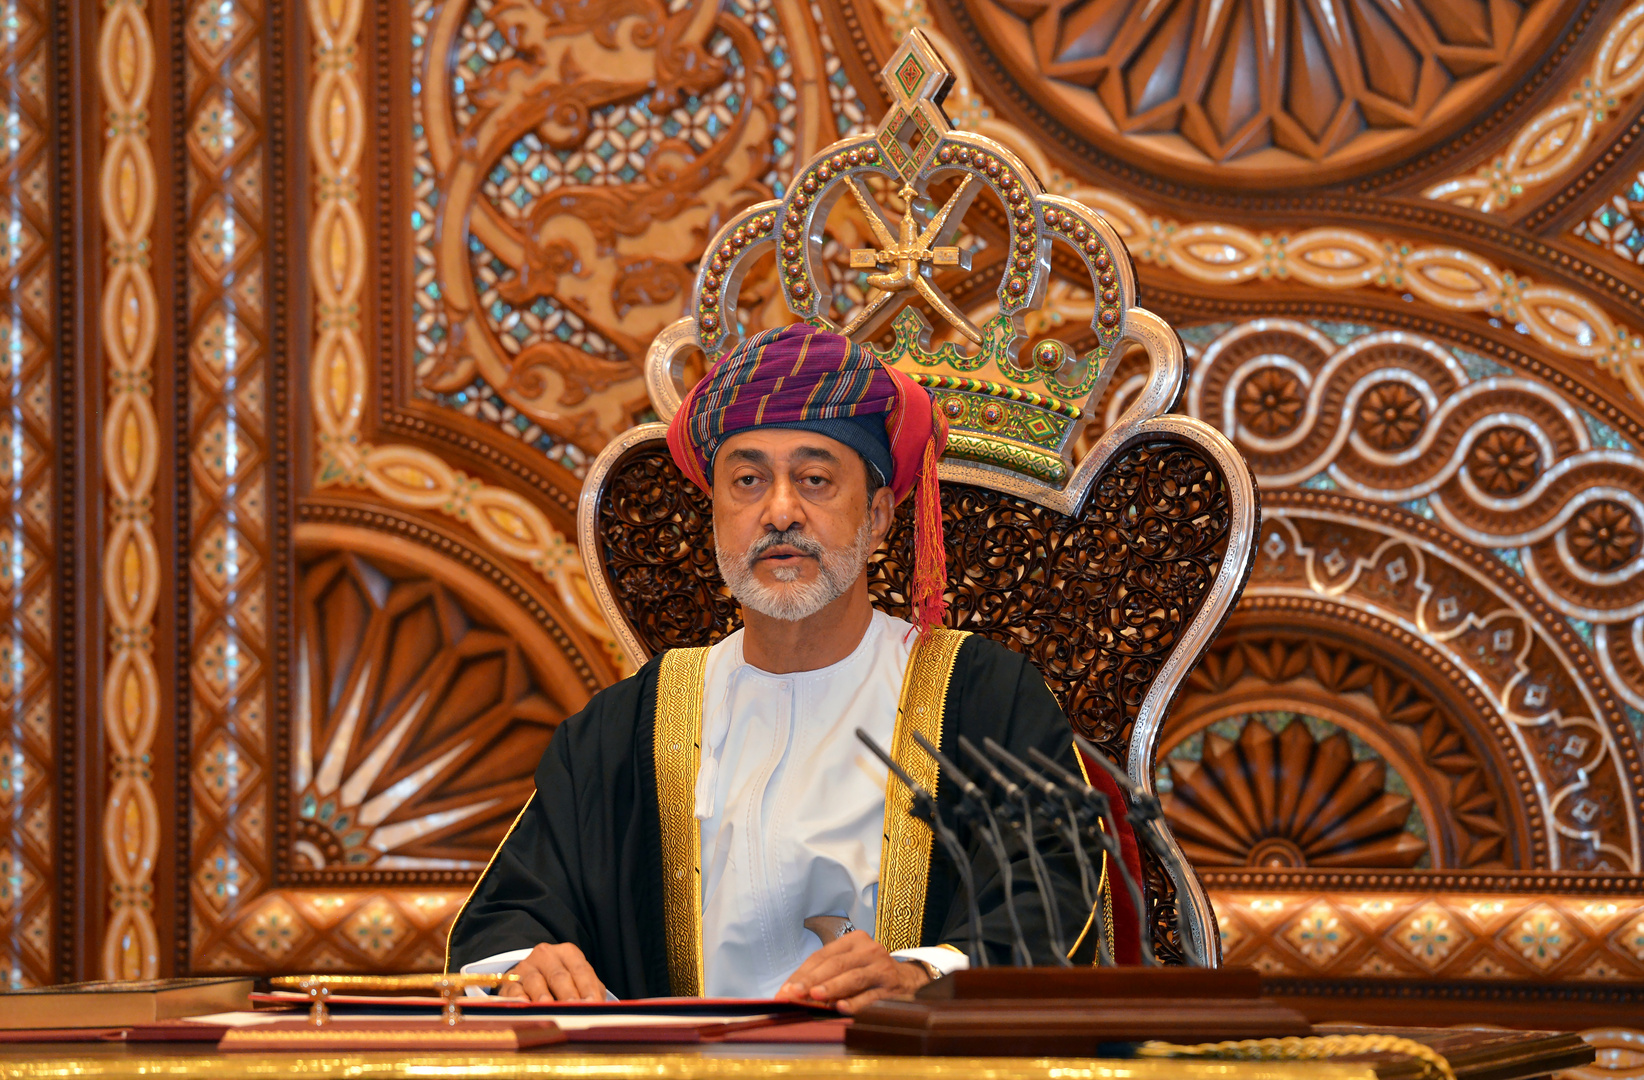 سلطنة عمان تقر مرسوم الخلافة من الحاكم إلى الابن الأكبر